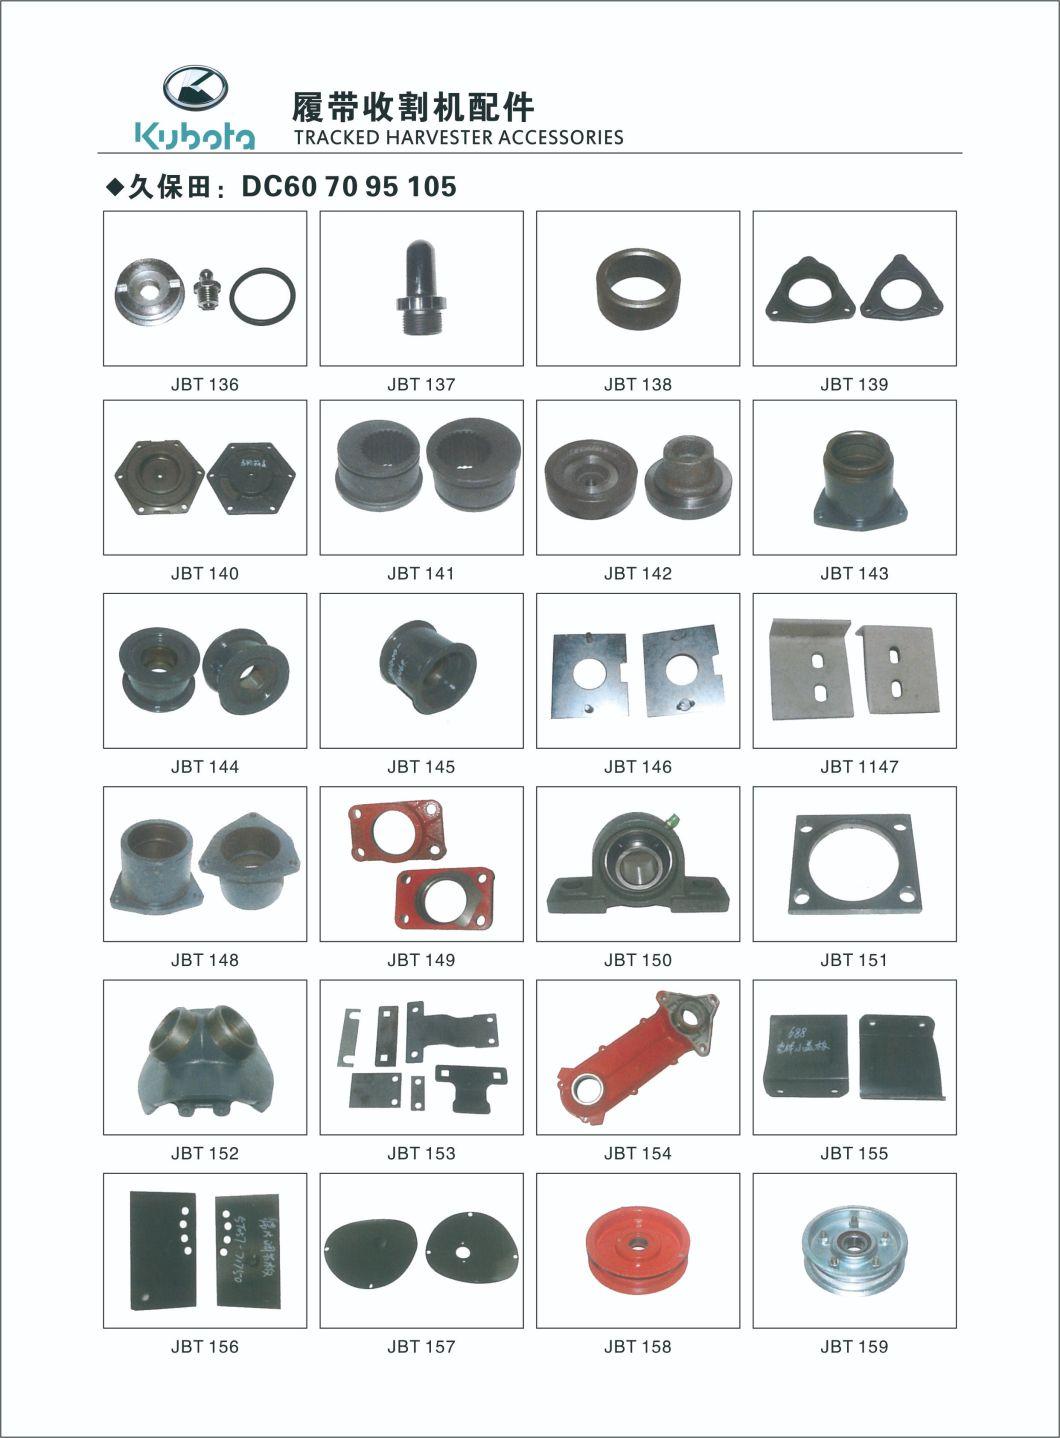 Bando V Belt Parts for Kubota or Other Harvester Sc63